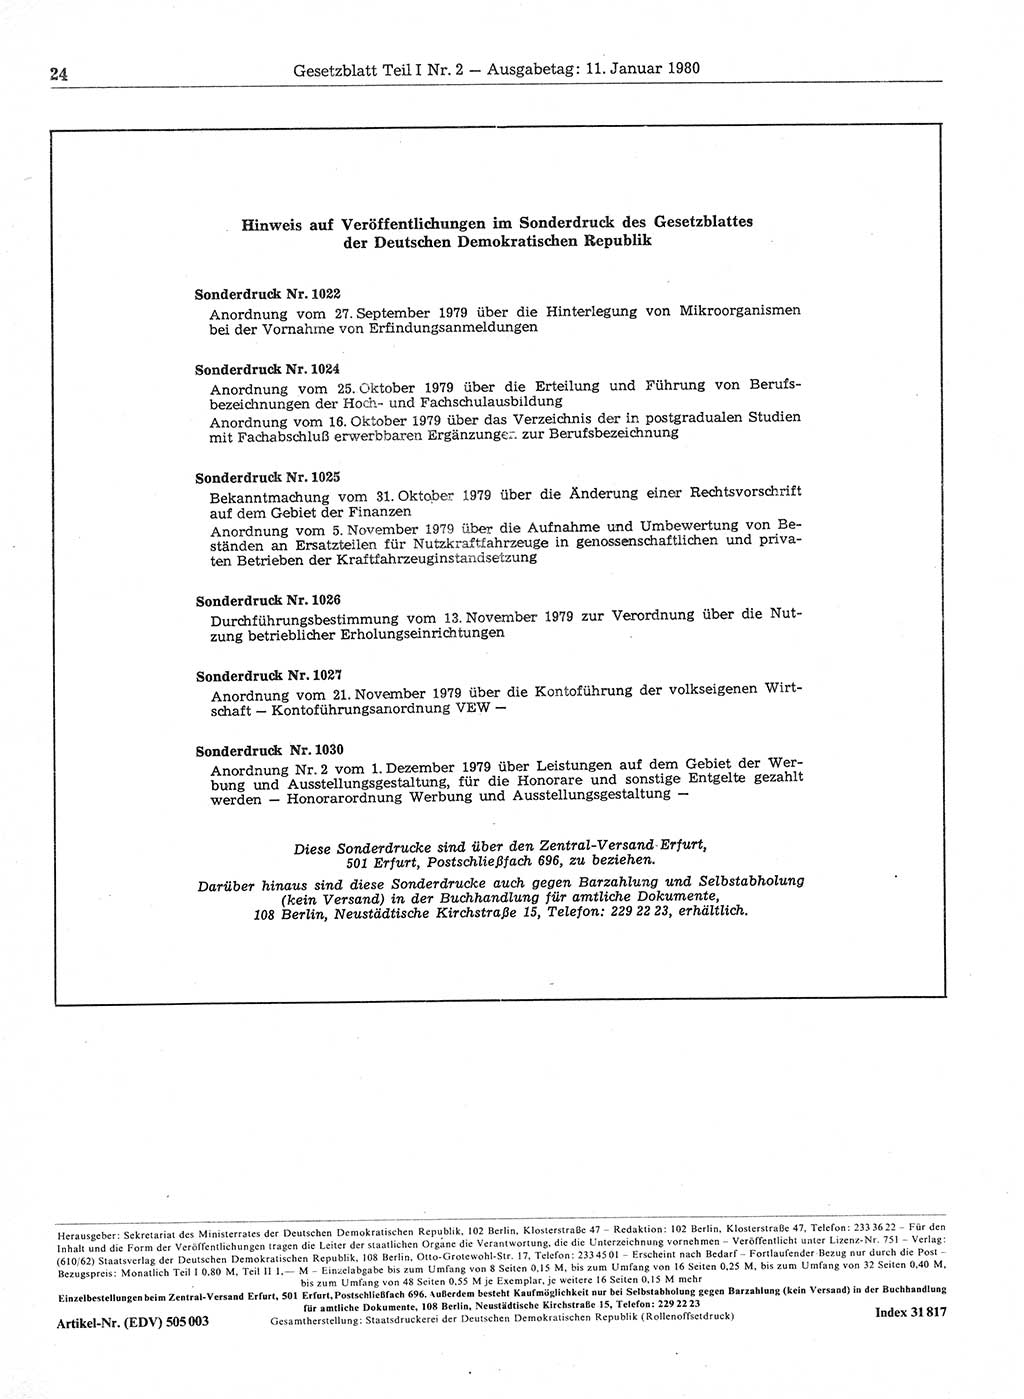 Gesetzblatt (GBl.) der Deutschen Demokratischen Republik (DDR) Teil Ⅰ 1980, Seite 24 (GBl. DDR Ⅰ 1980, S. 24)